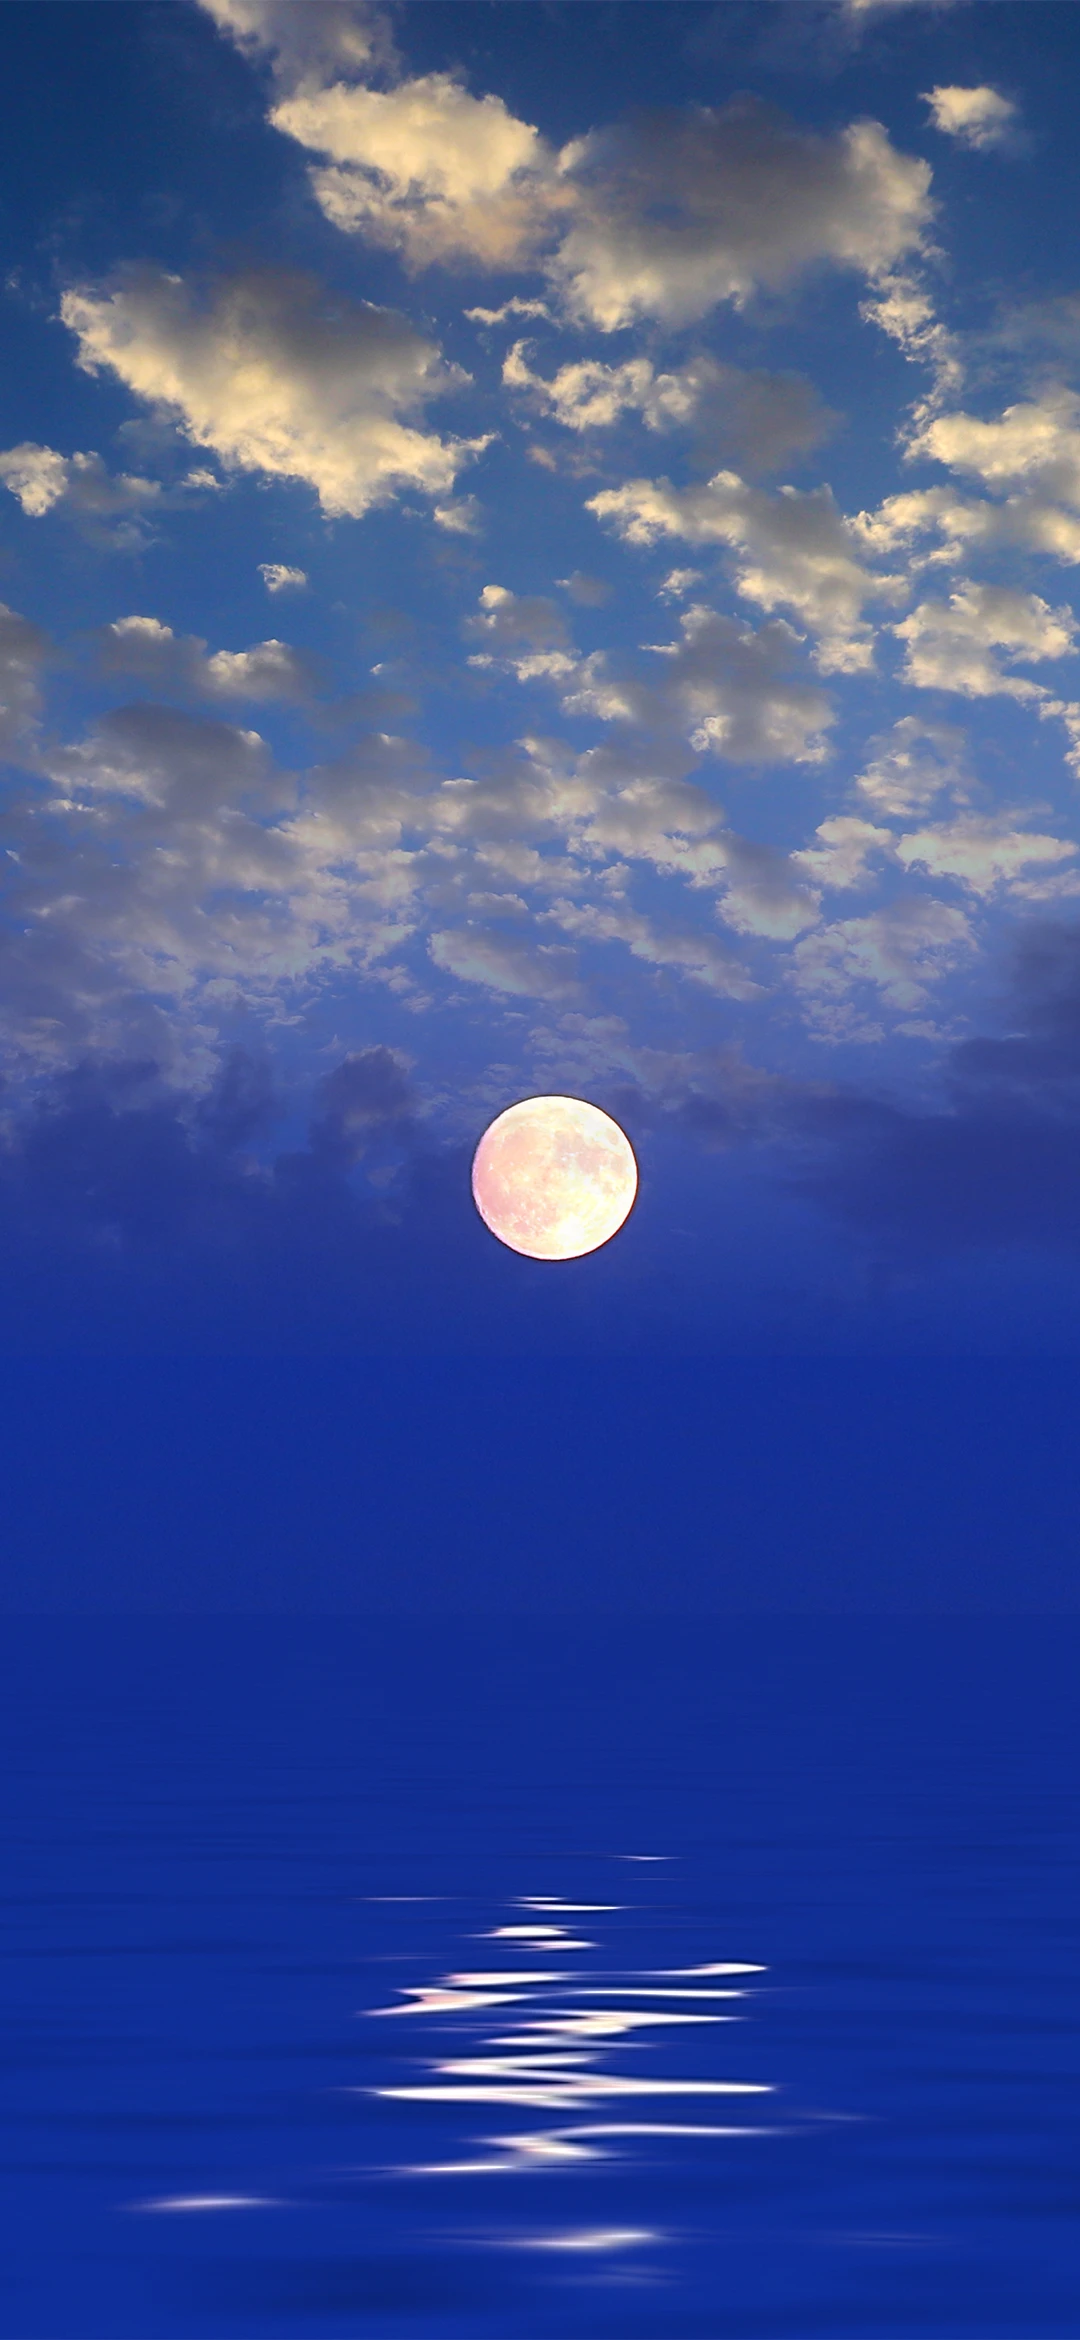 明月素材摄影夜晚湖水平静像镜面一样倒映着天边的明月和岸边的树木